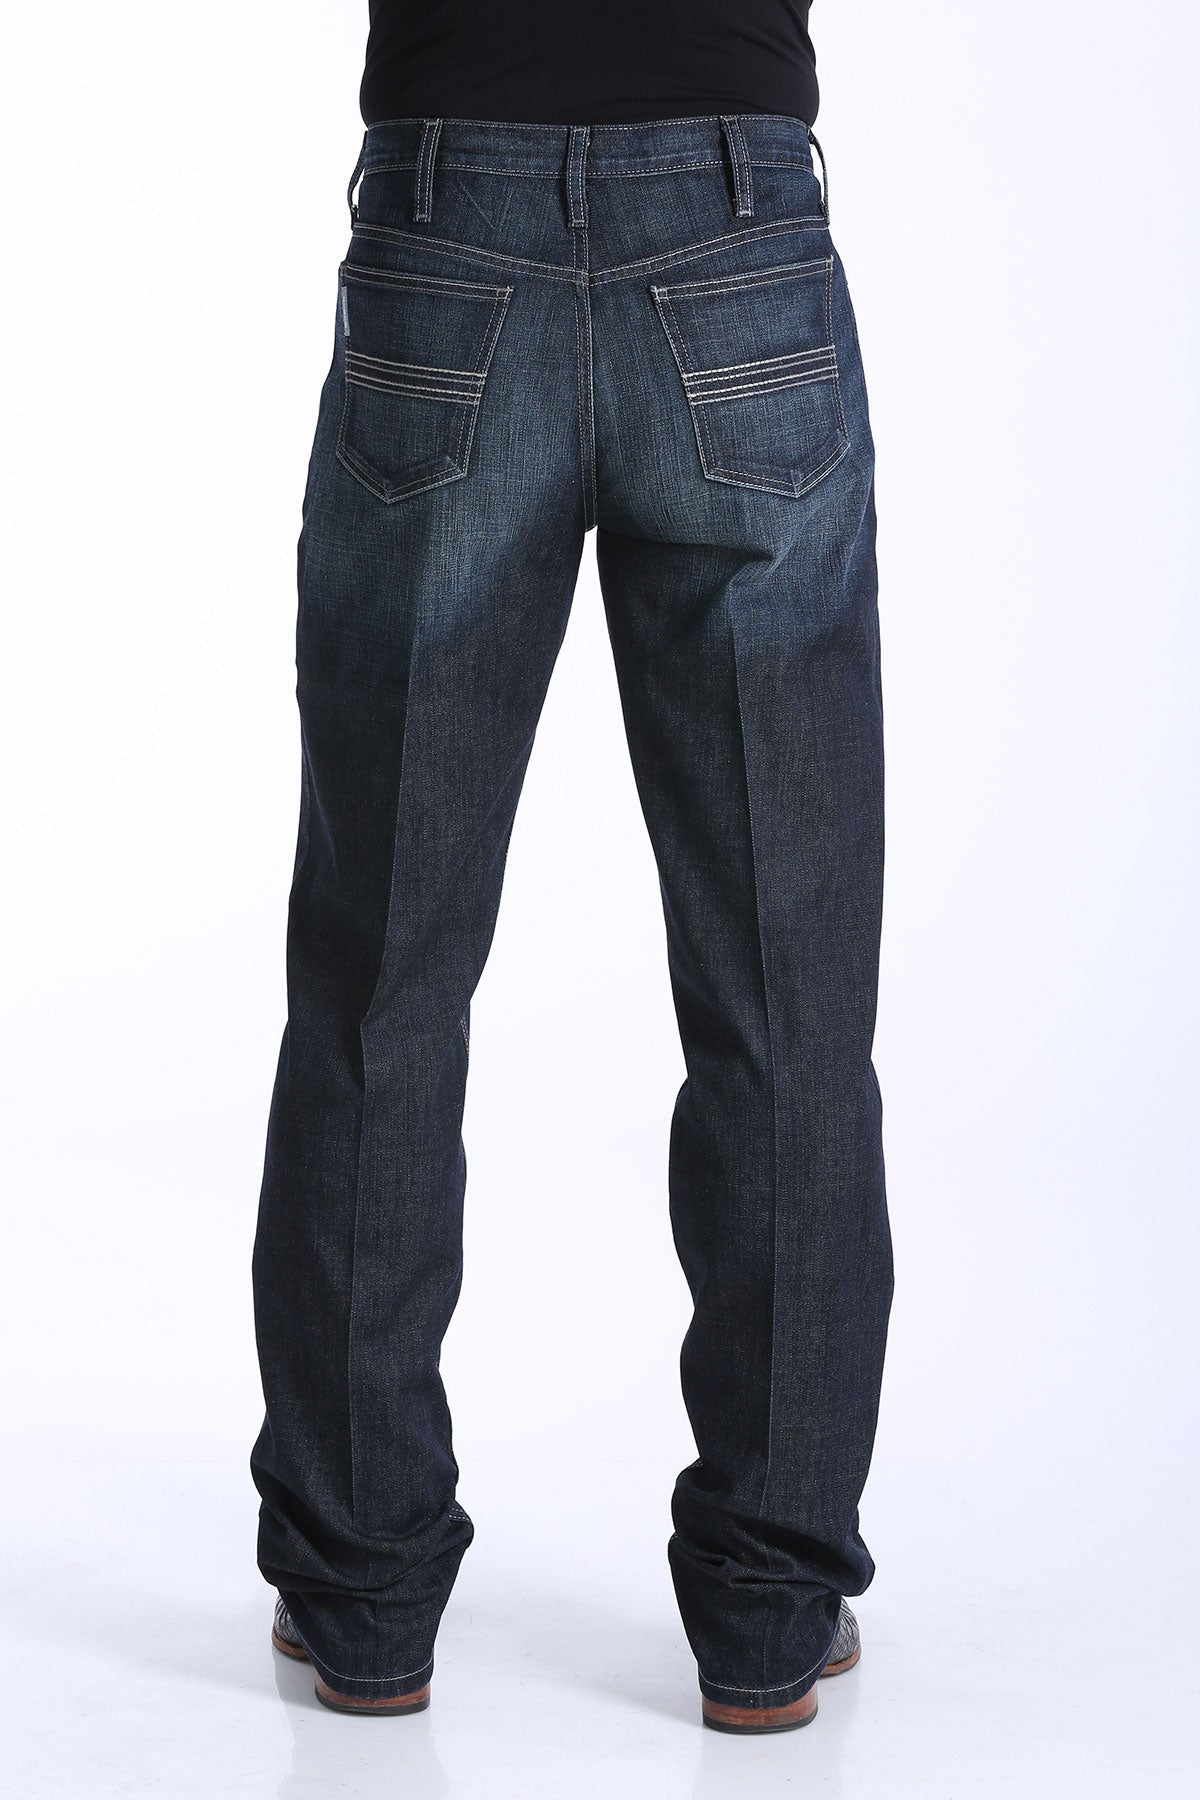 cinch flex jeans